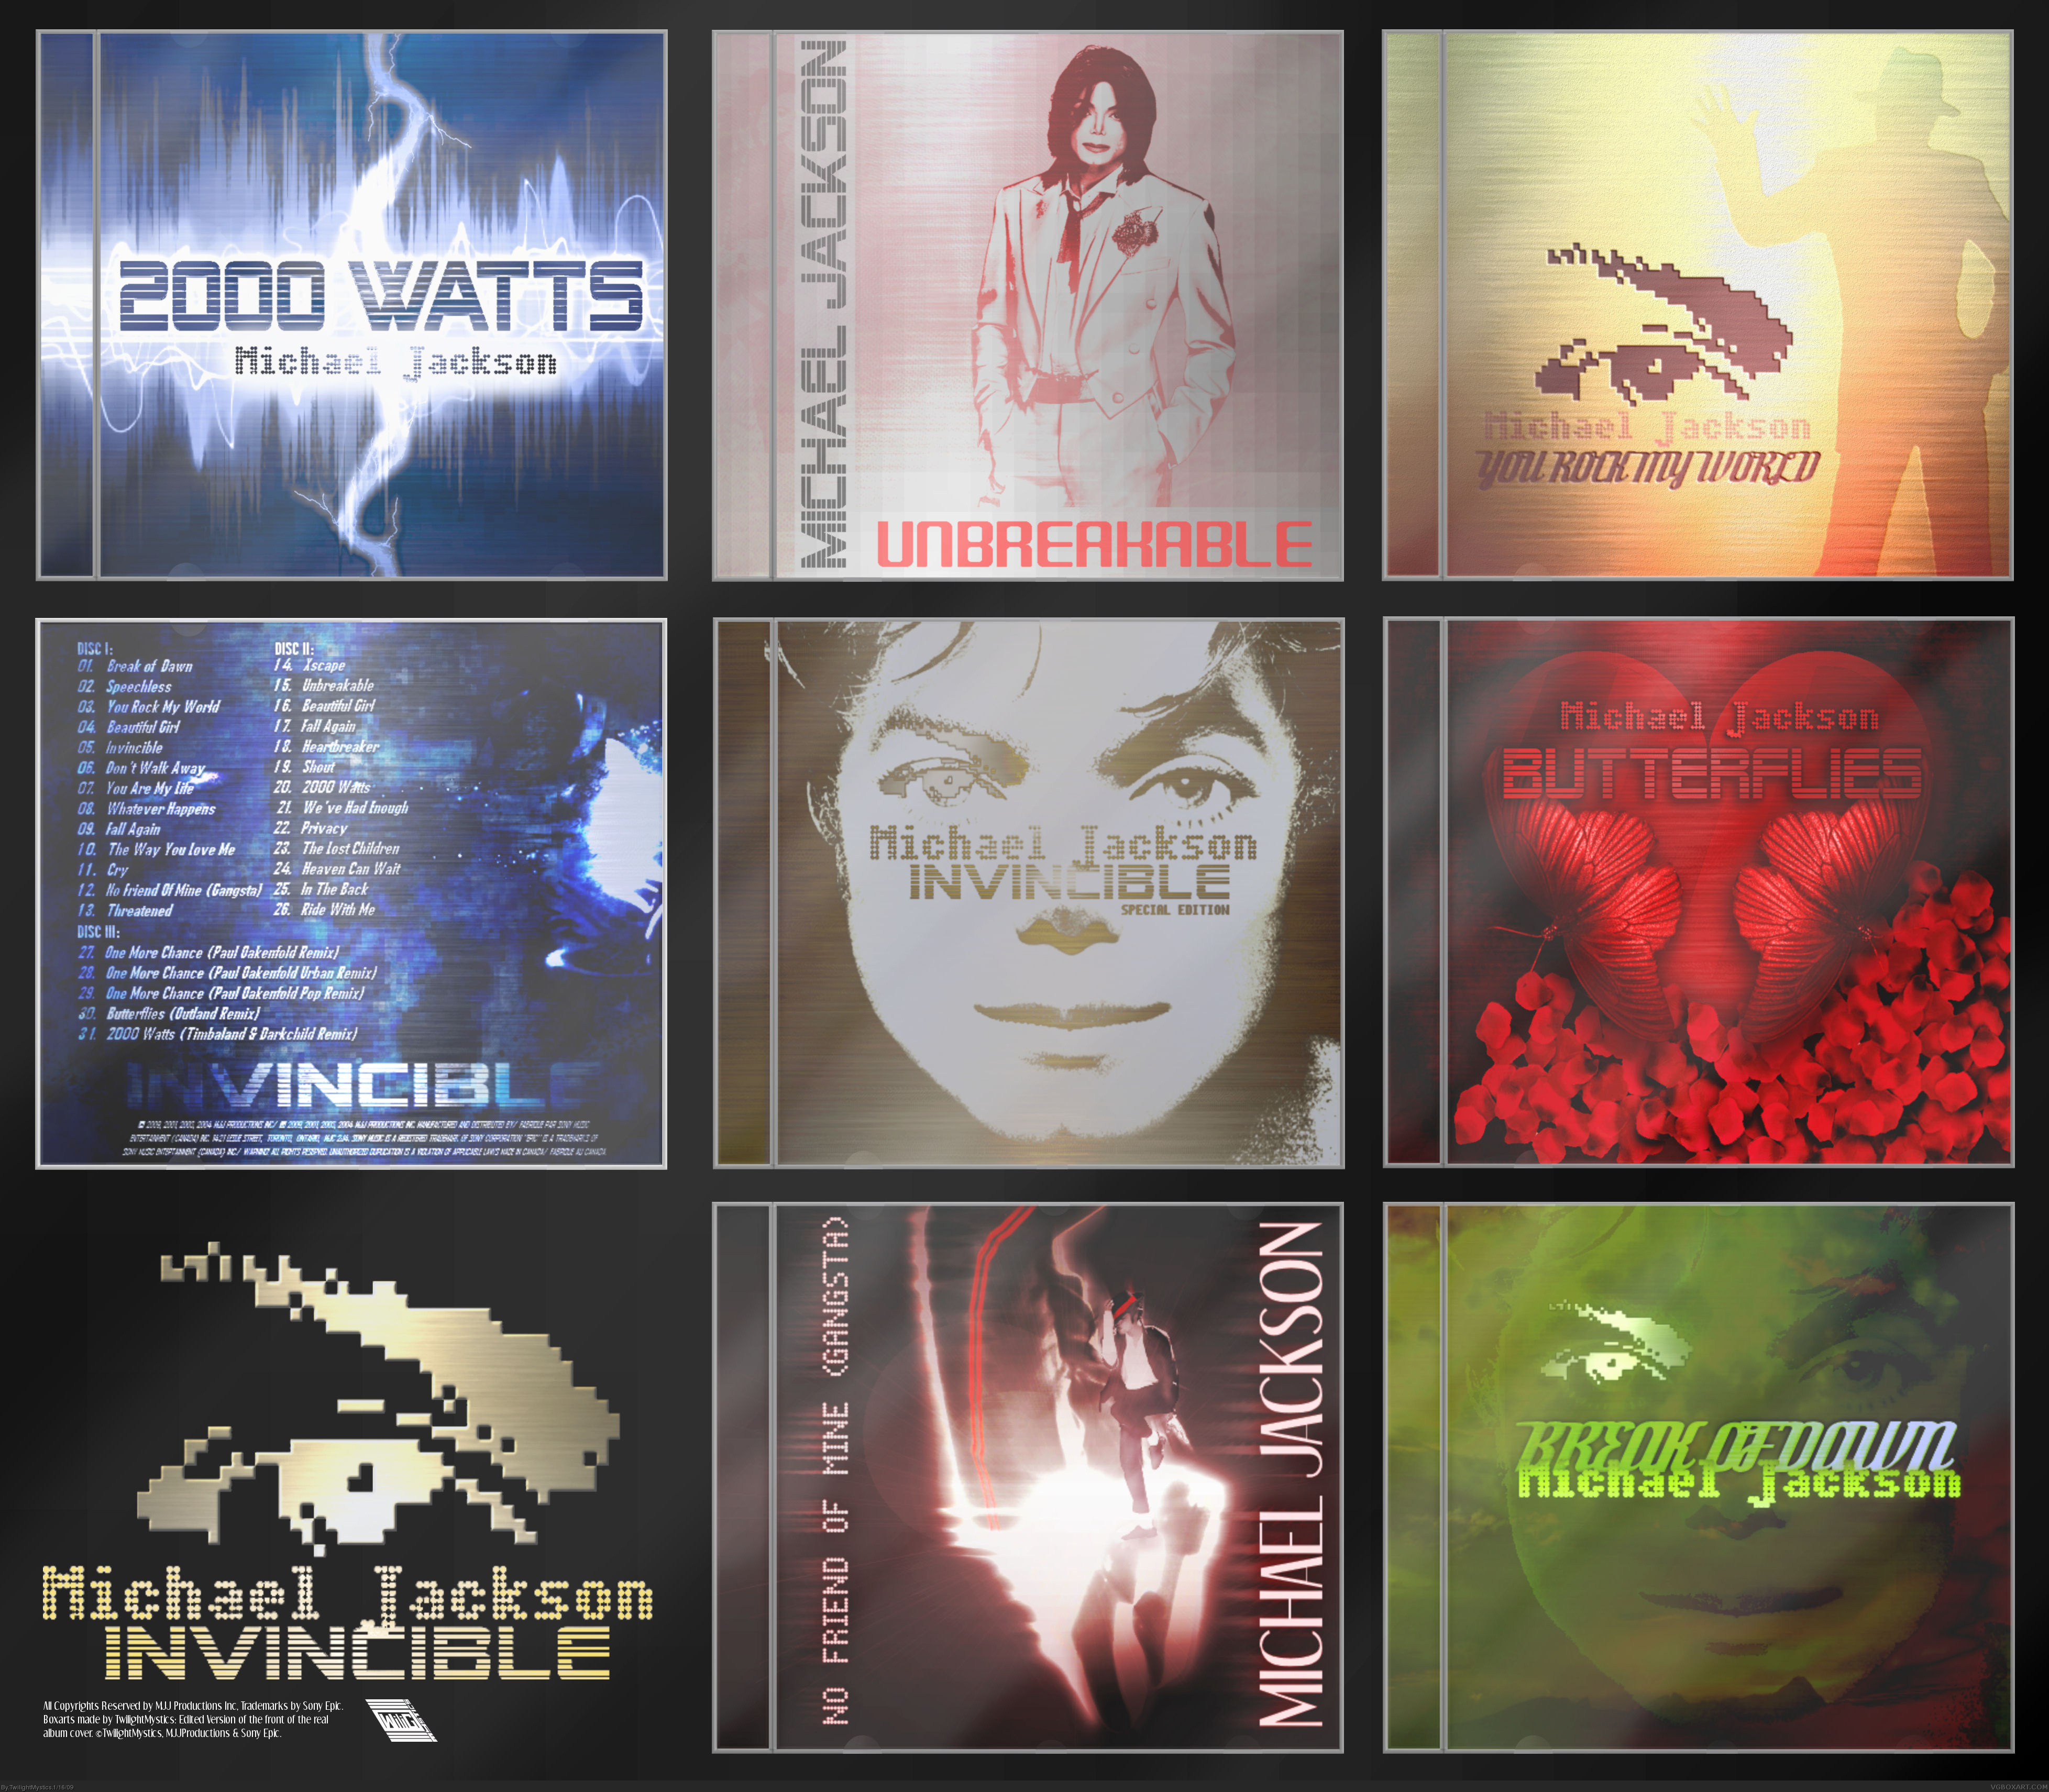 The Invincible Collection (Album + Singles) box cover